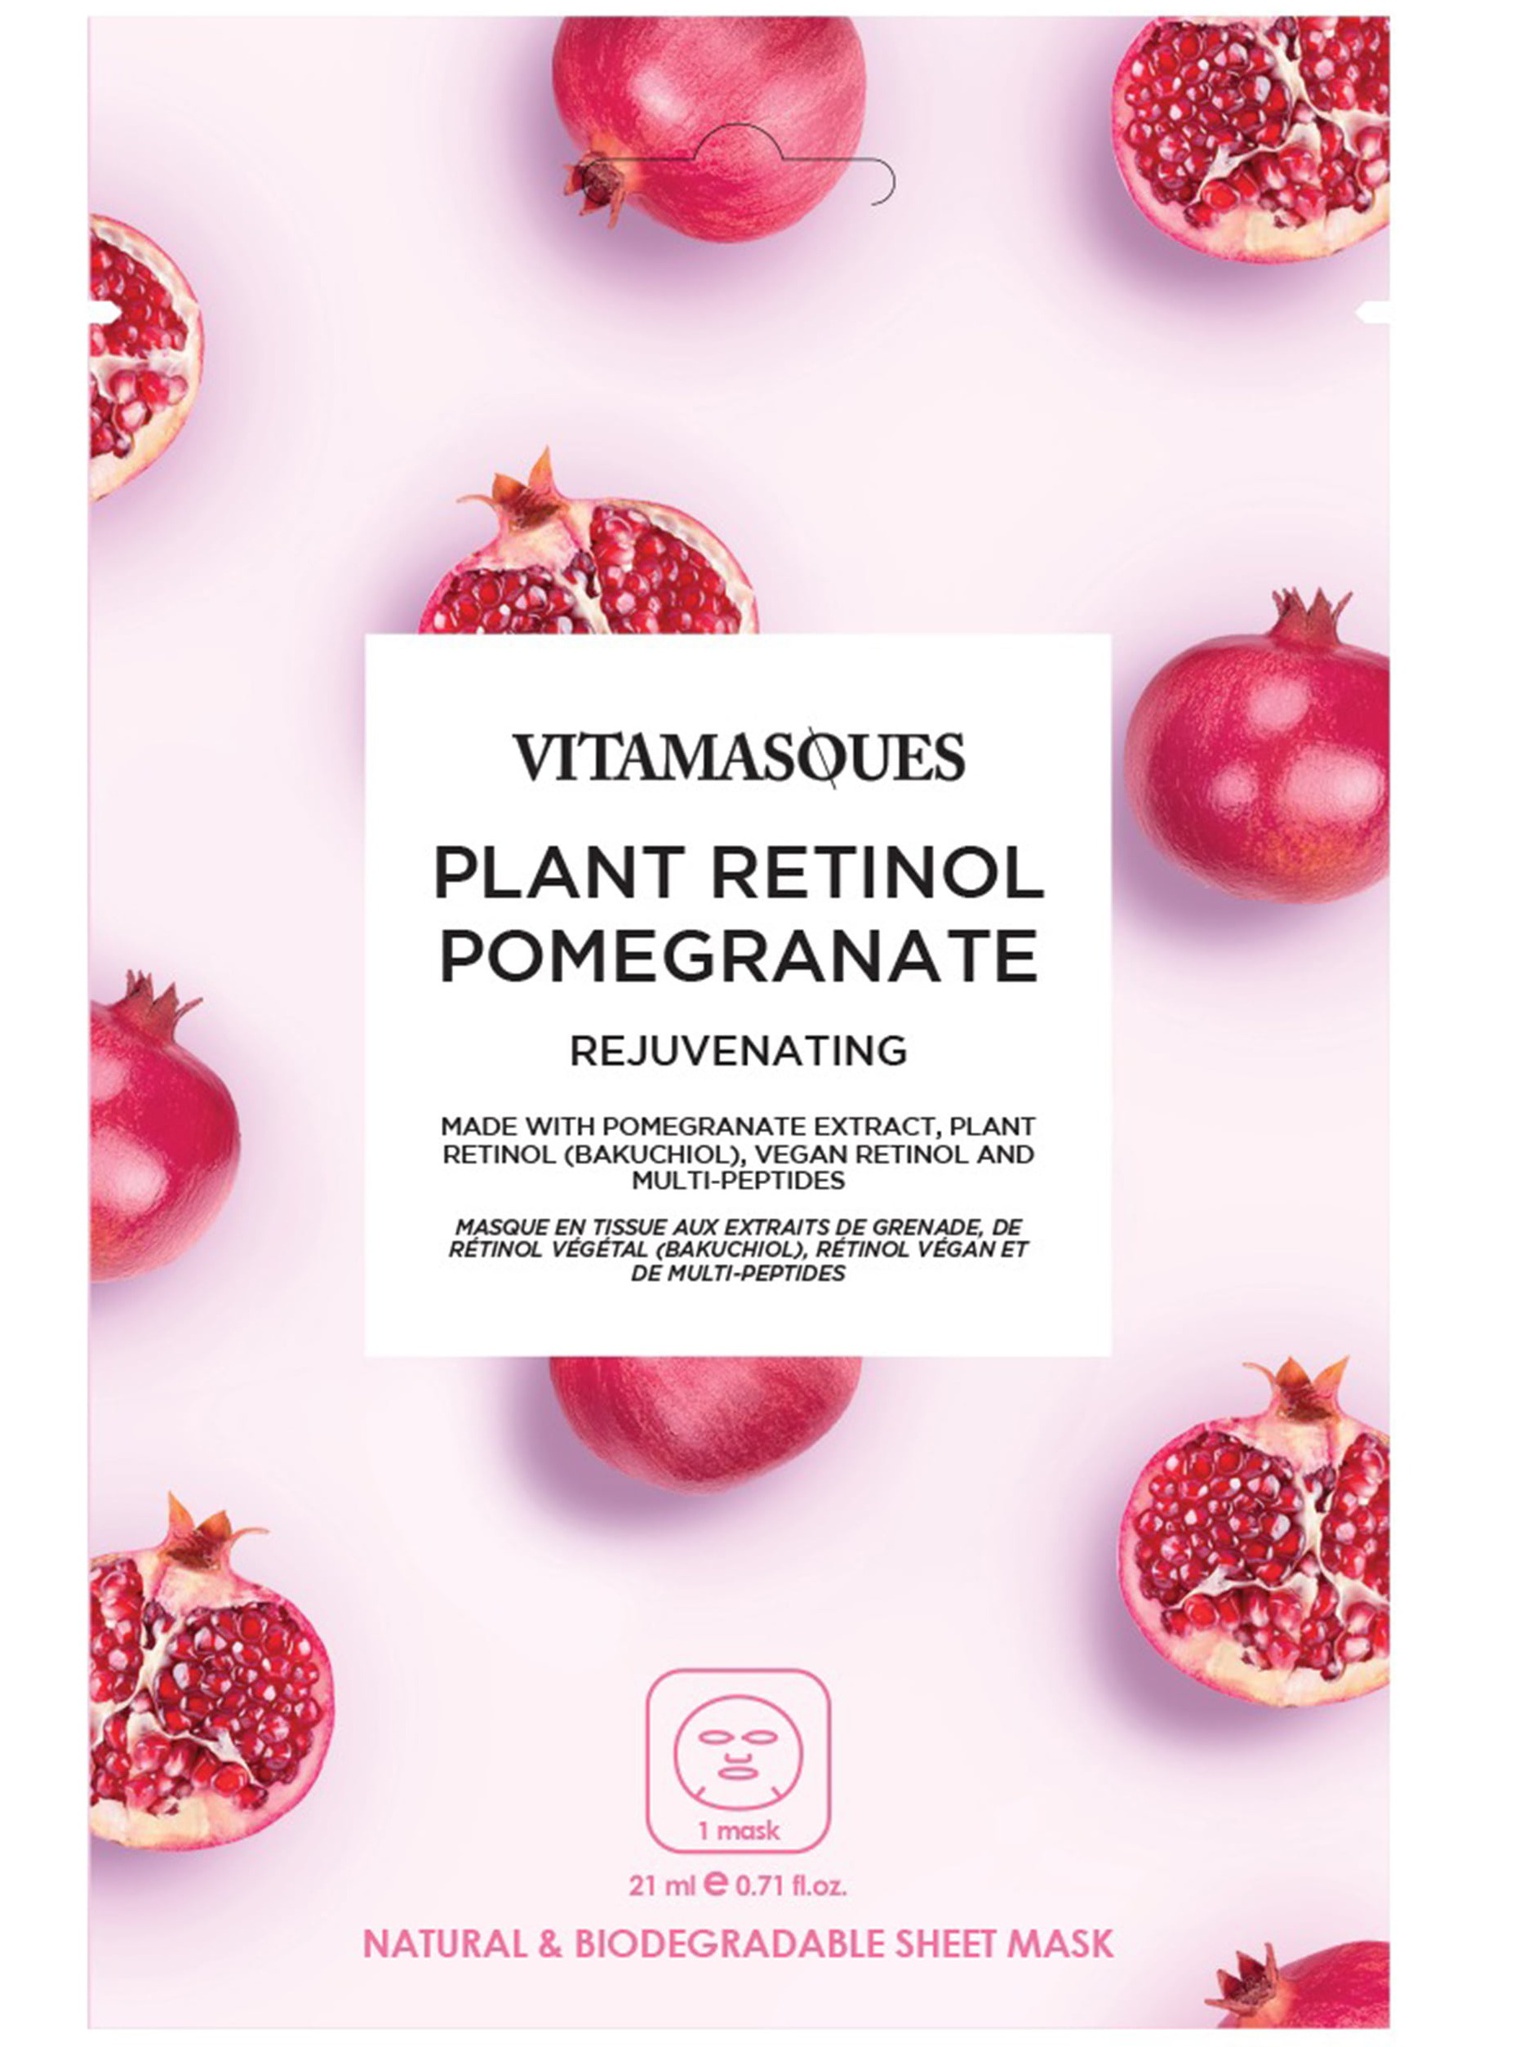 Vitamasques Pomegranate